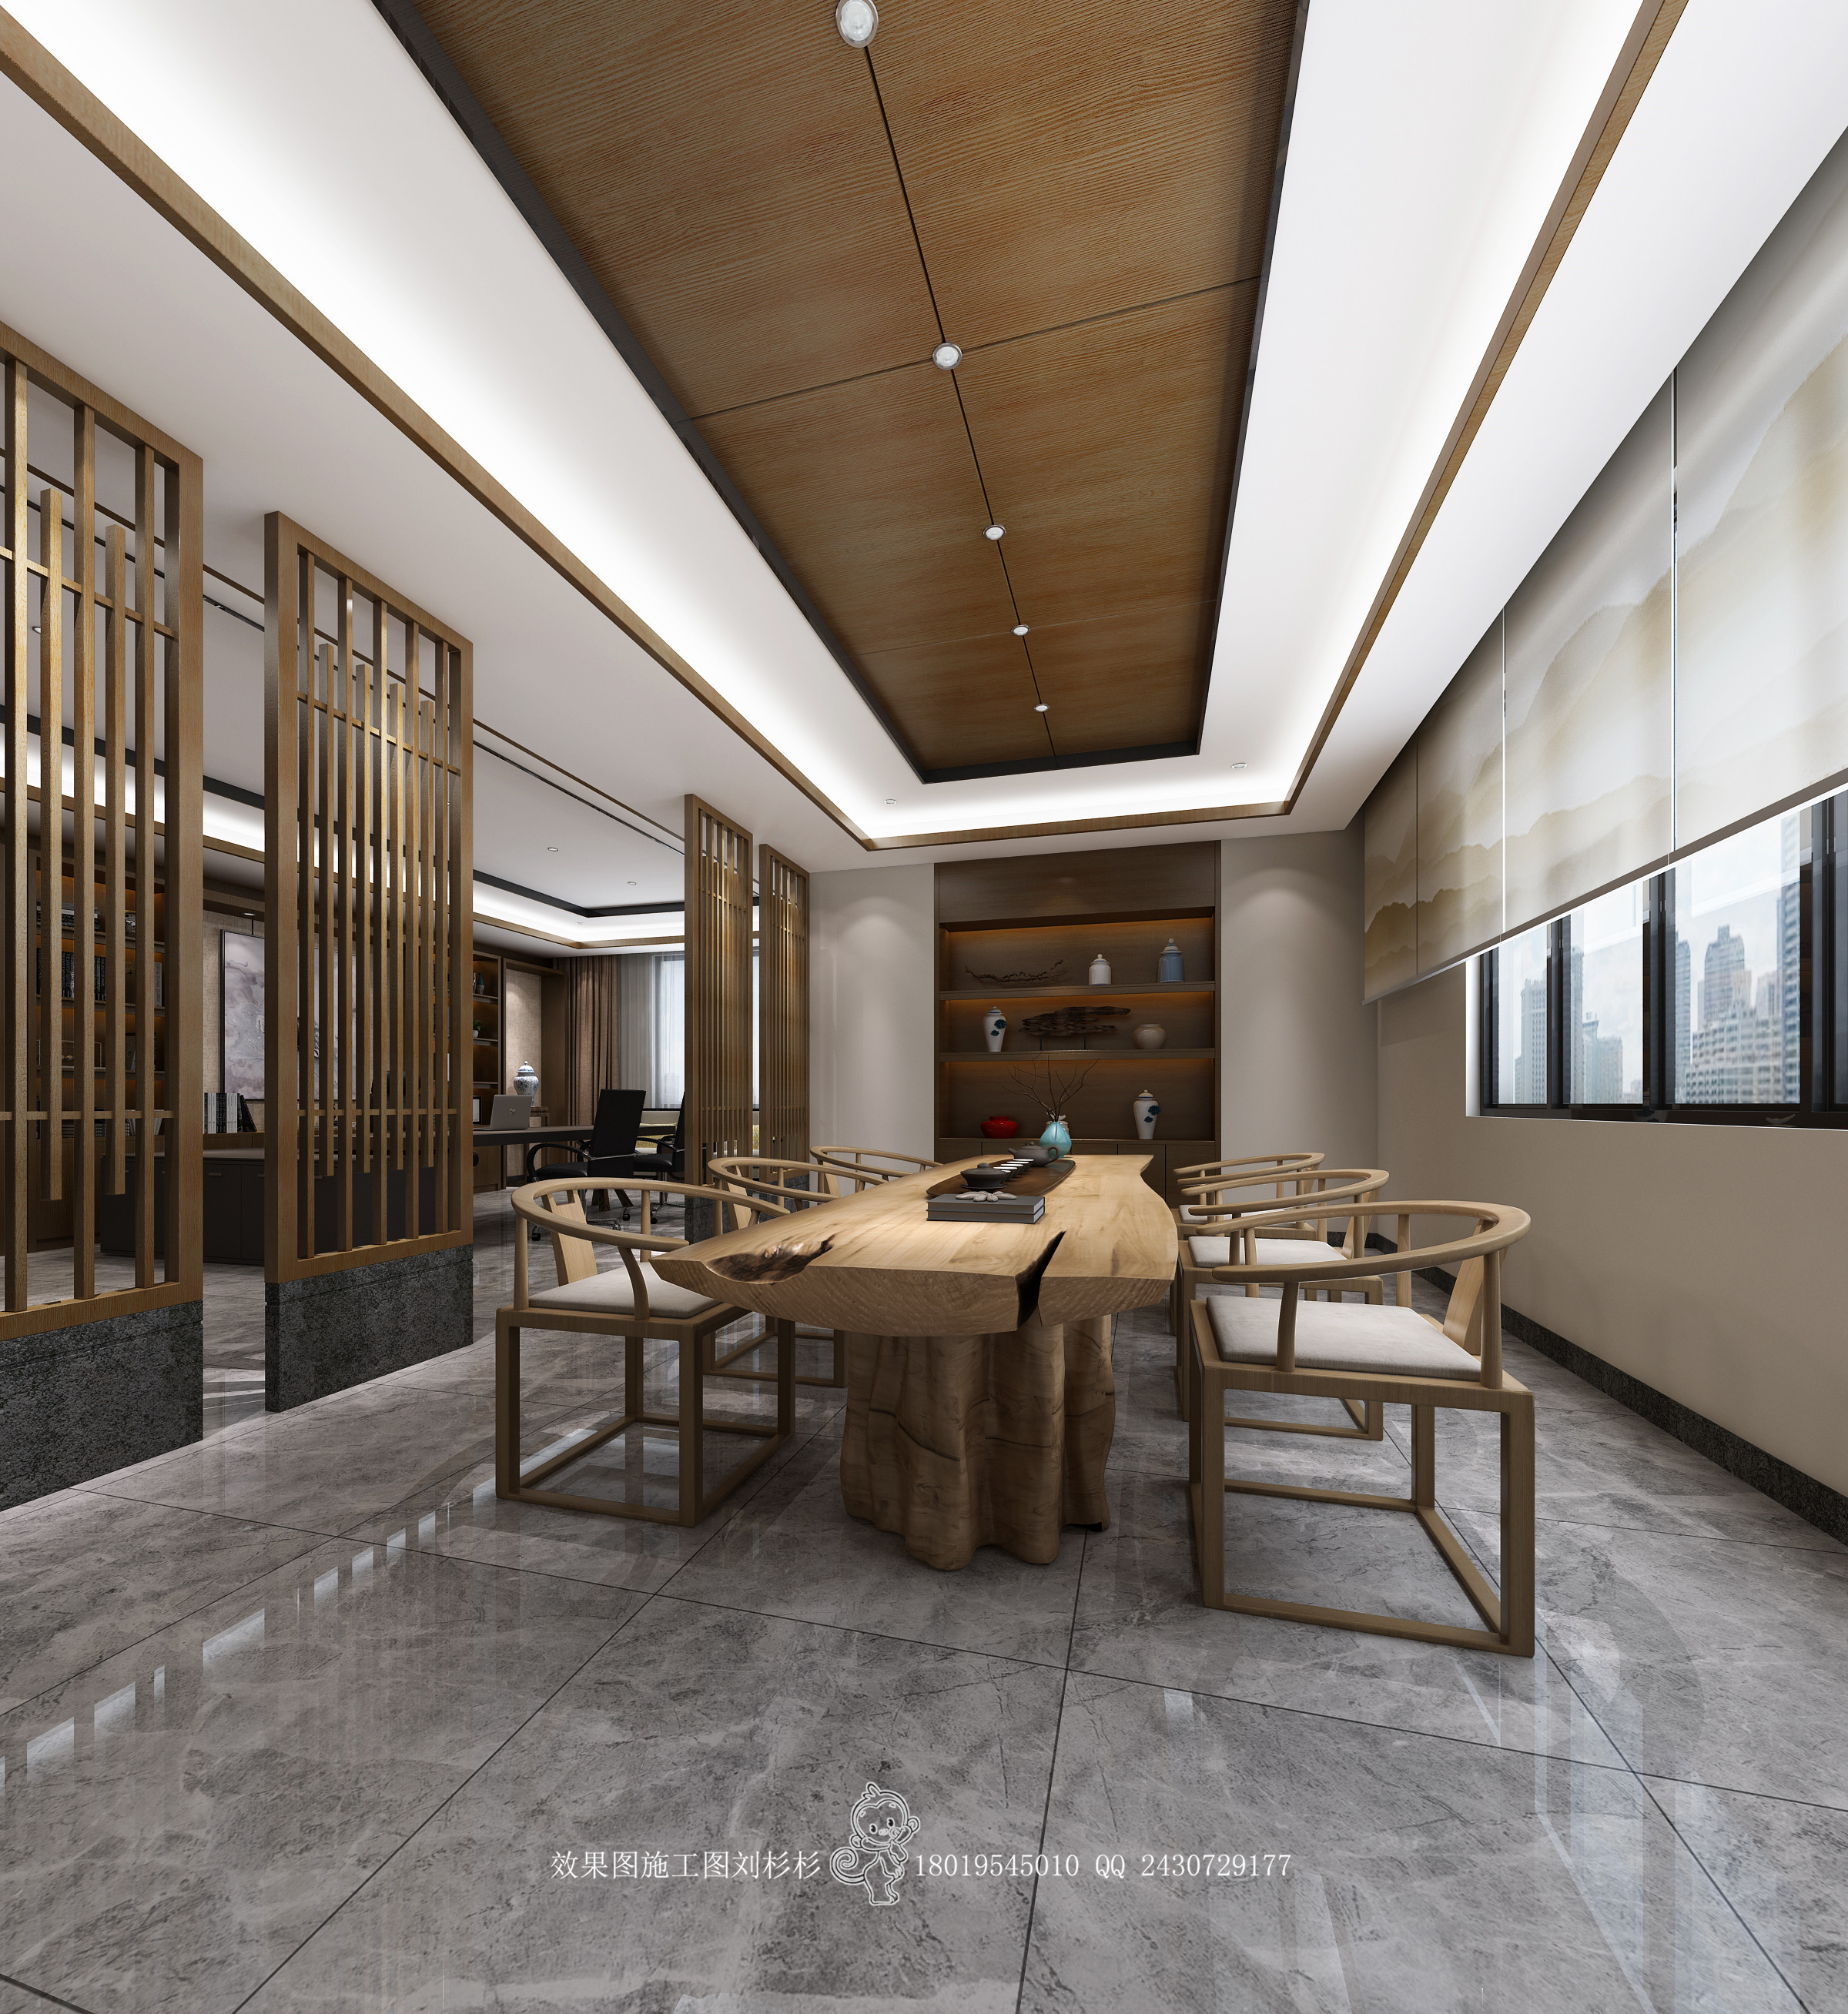 新中式挑空客厅 - 效果图交流区-建E室内设计网